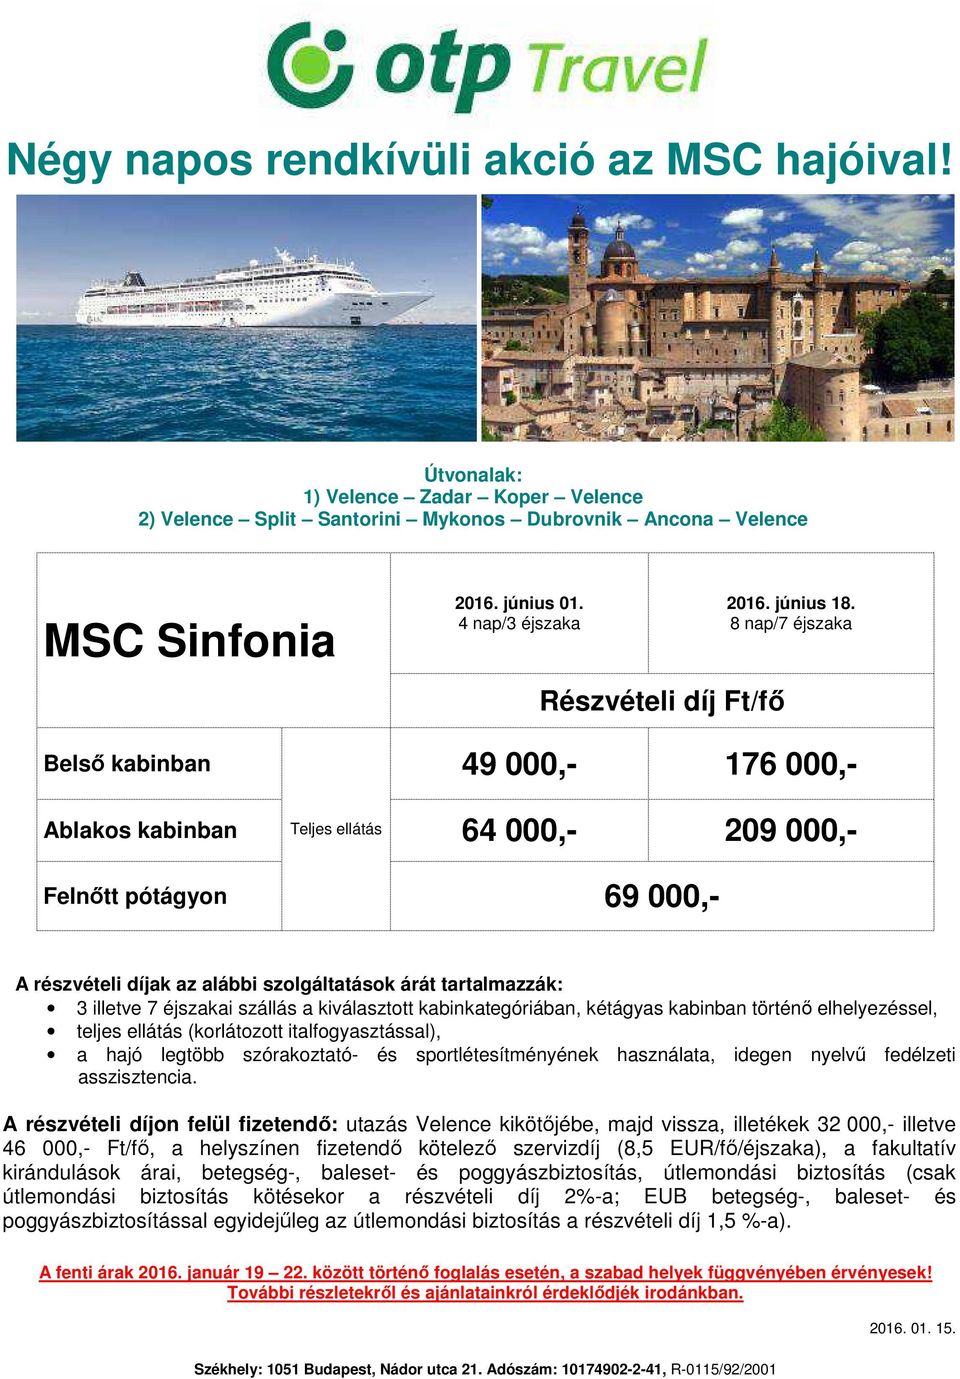 díjon felül fizetendő: utazás Velence kikötőjébe, majd vissza, illetékek 32 000,- illetve 46 000,- Ft/fő, a helyszínen fizetendő kötelező szervizdíj (8,5 EUR/fő/éjszaka), a fakultatív kirándulások